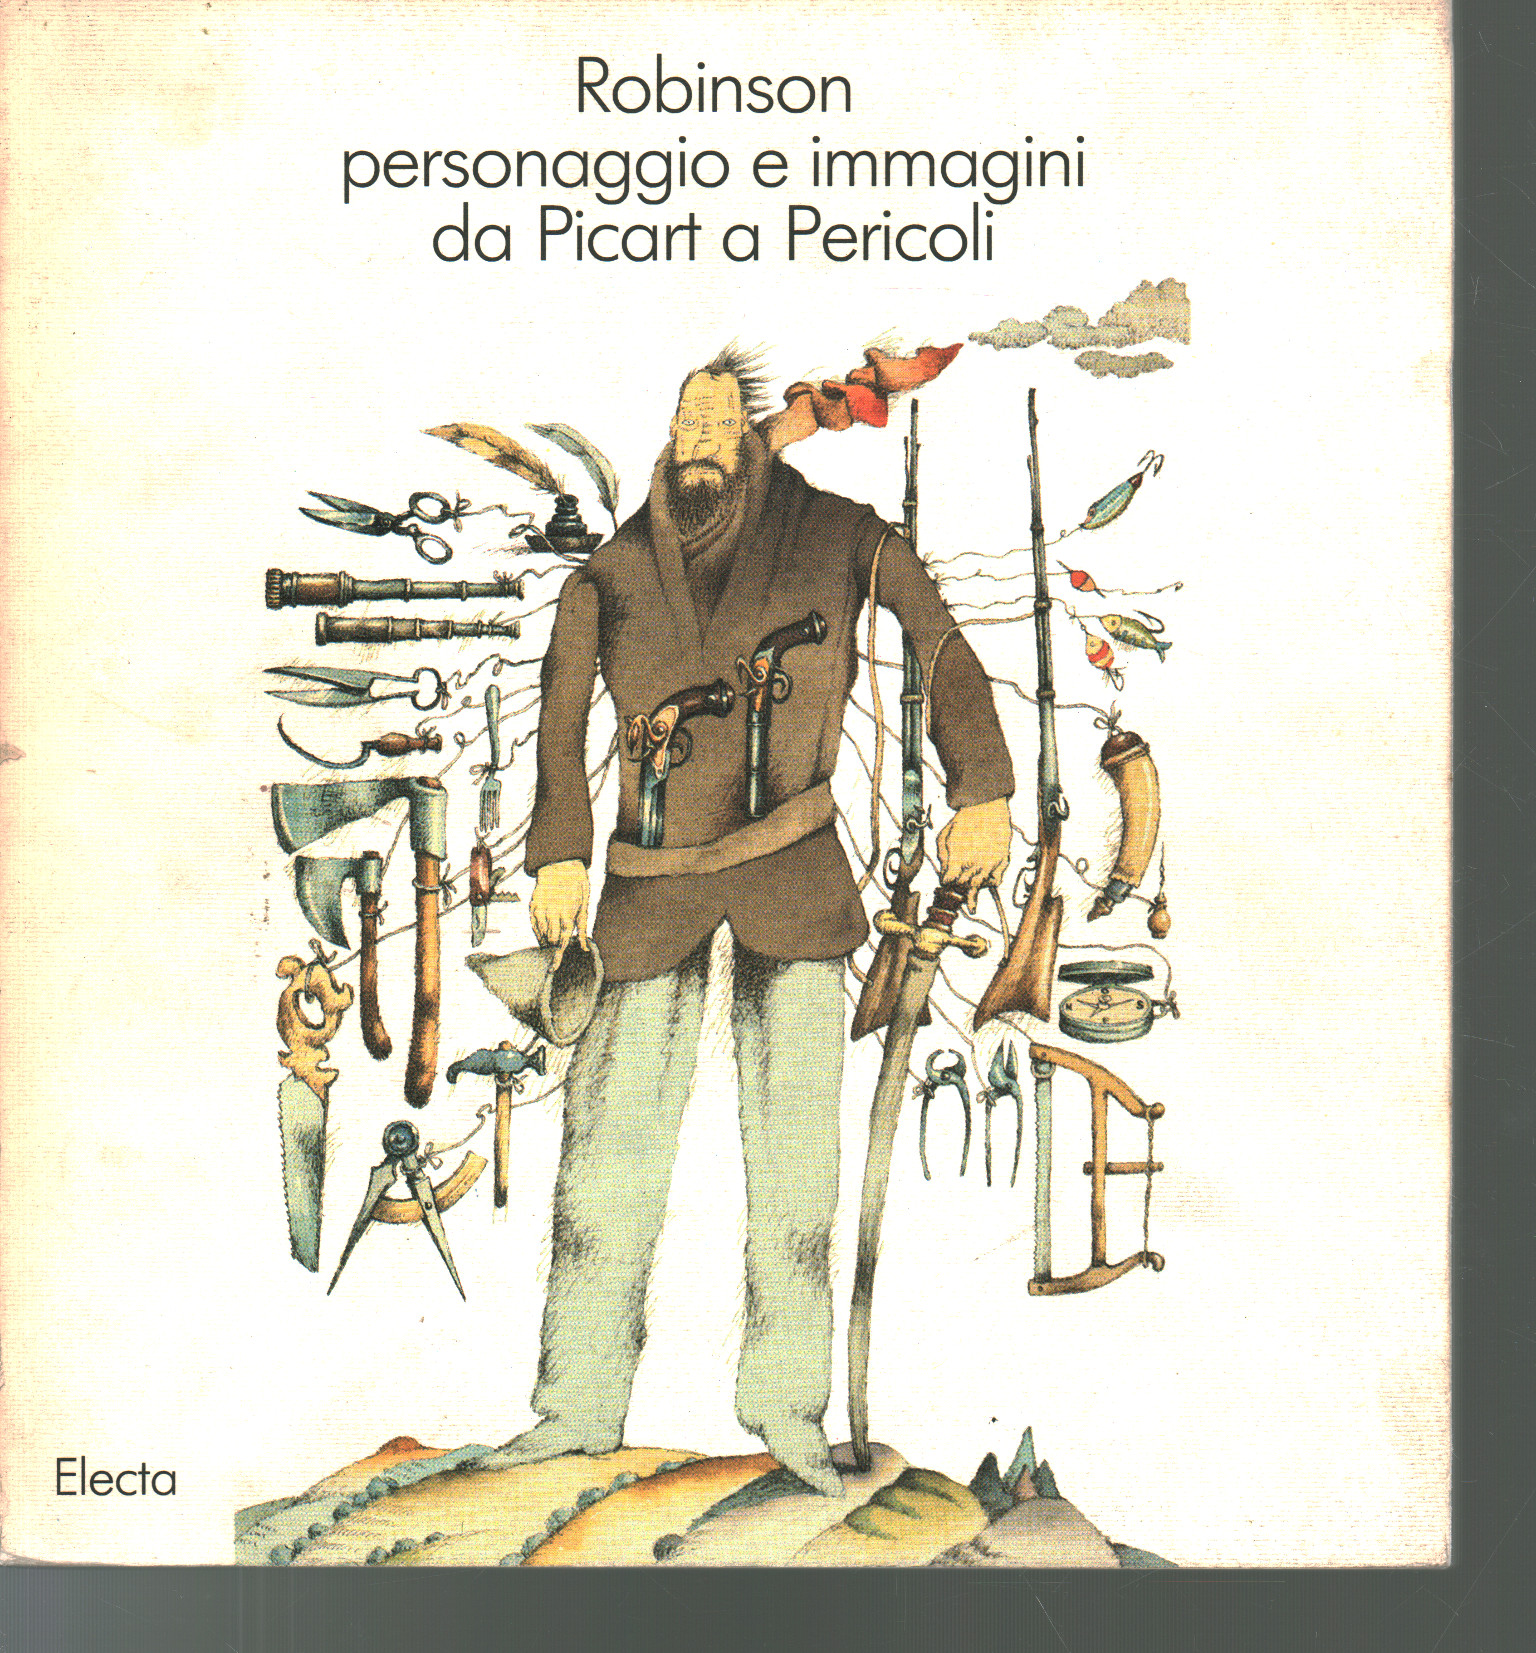 Robinson personaggio e immagini da Picart a Perico, Paolo Temeroli